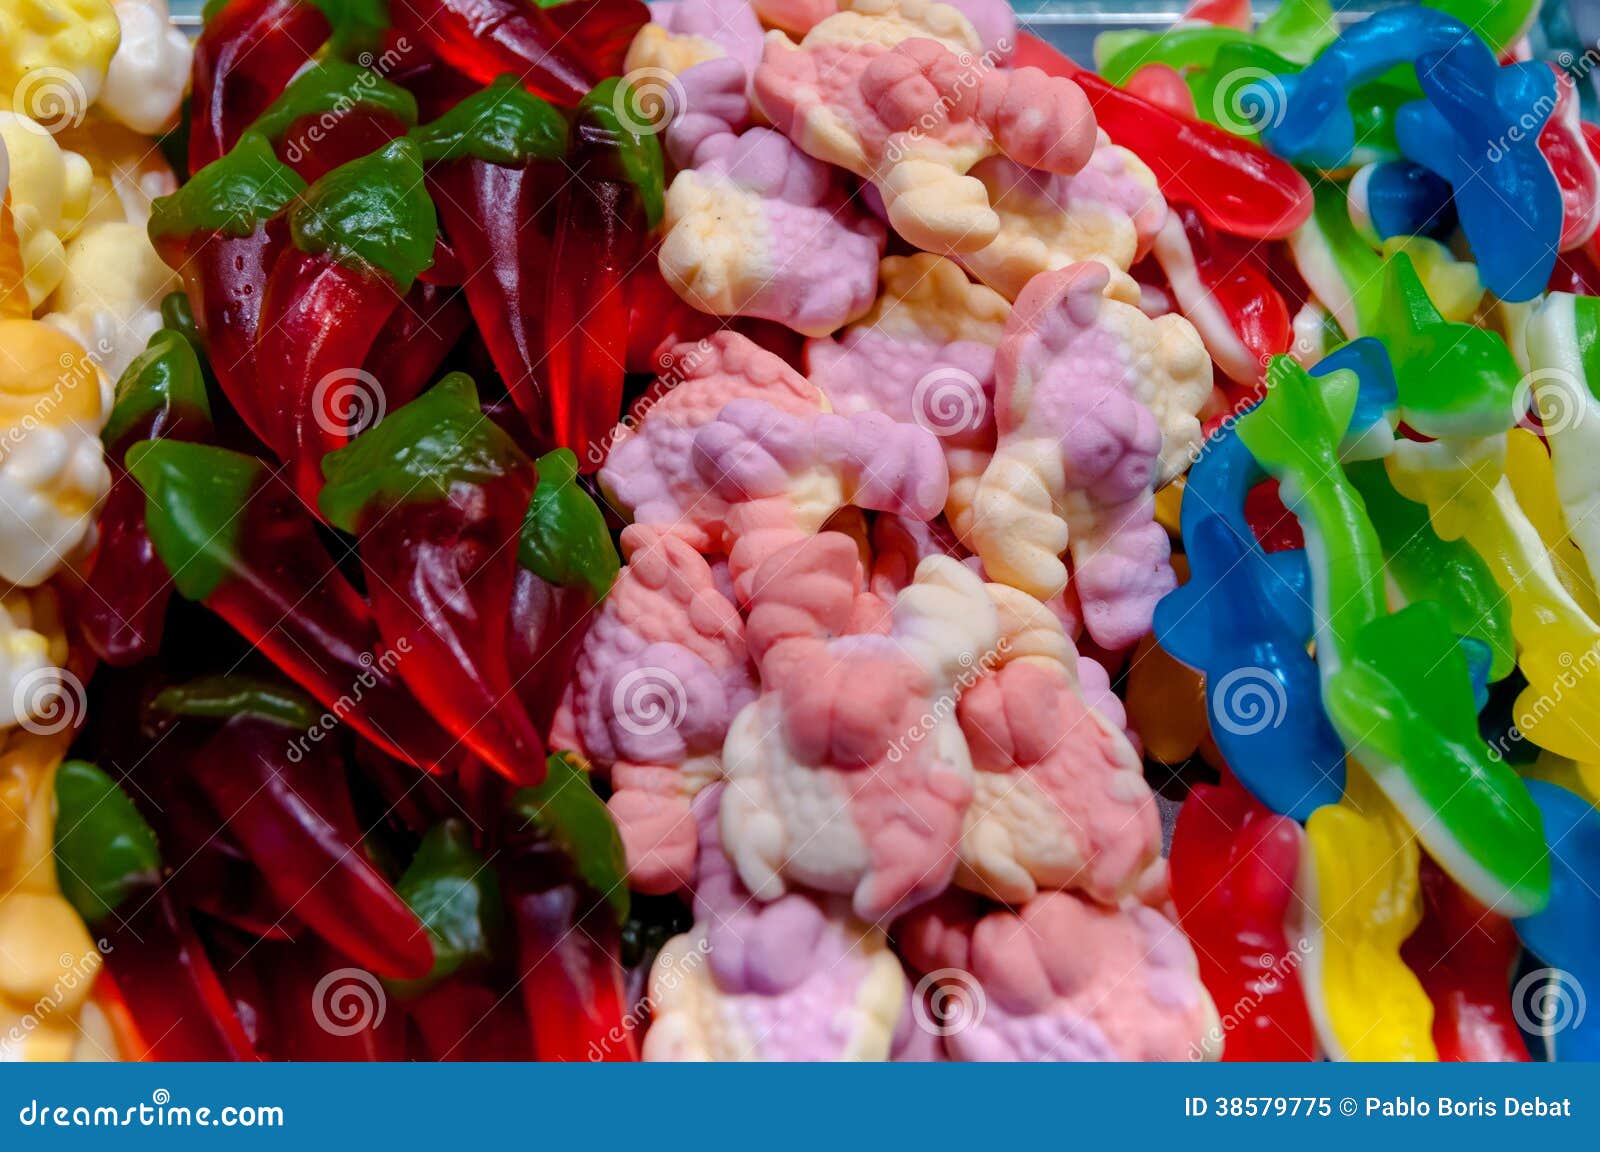 jelly candies in la boqueria market at barcelona